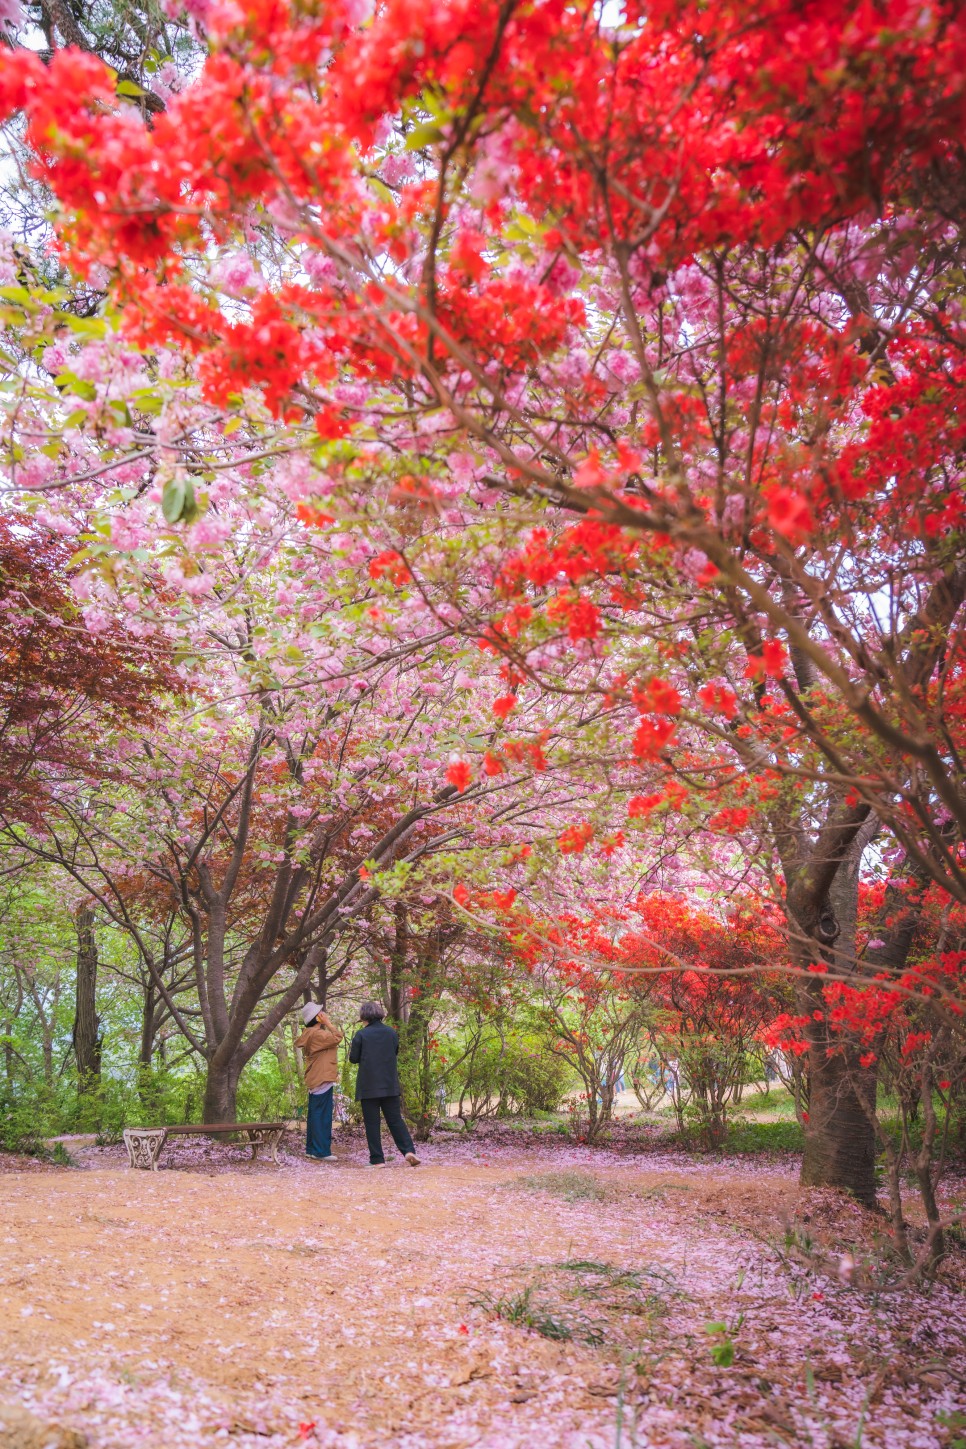 4월 국내여행지 벚꽃부터 철쭉까지 대한민국 사진 명소들